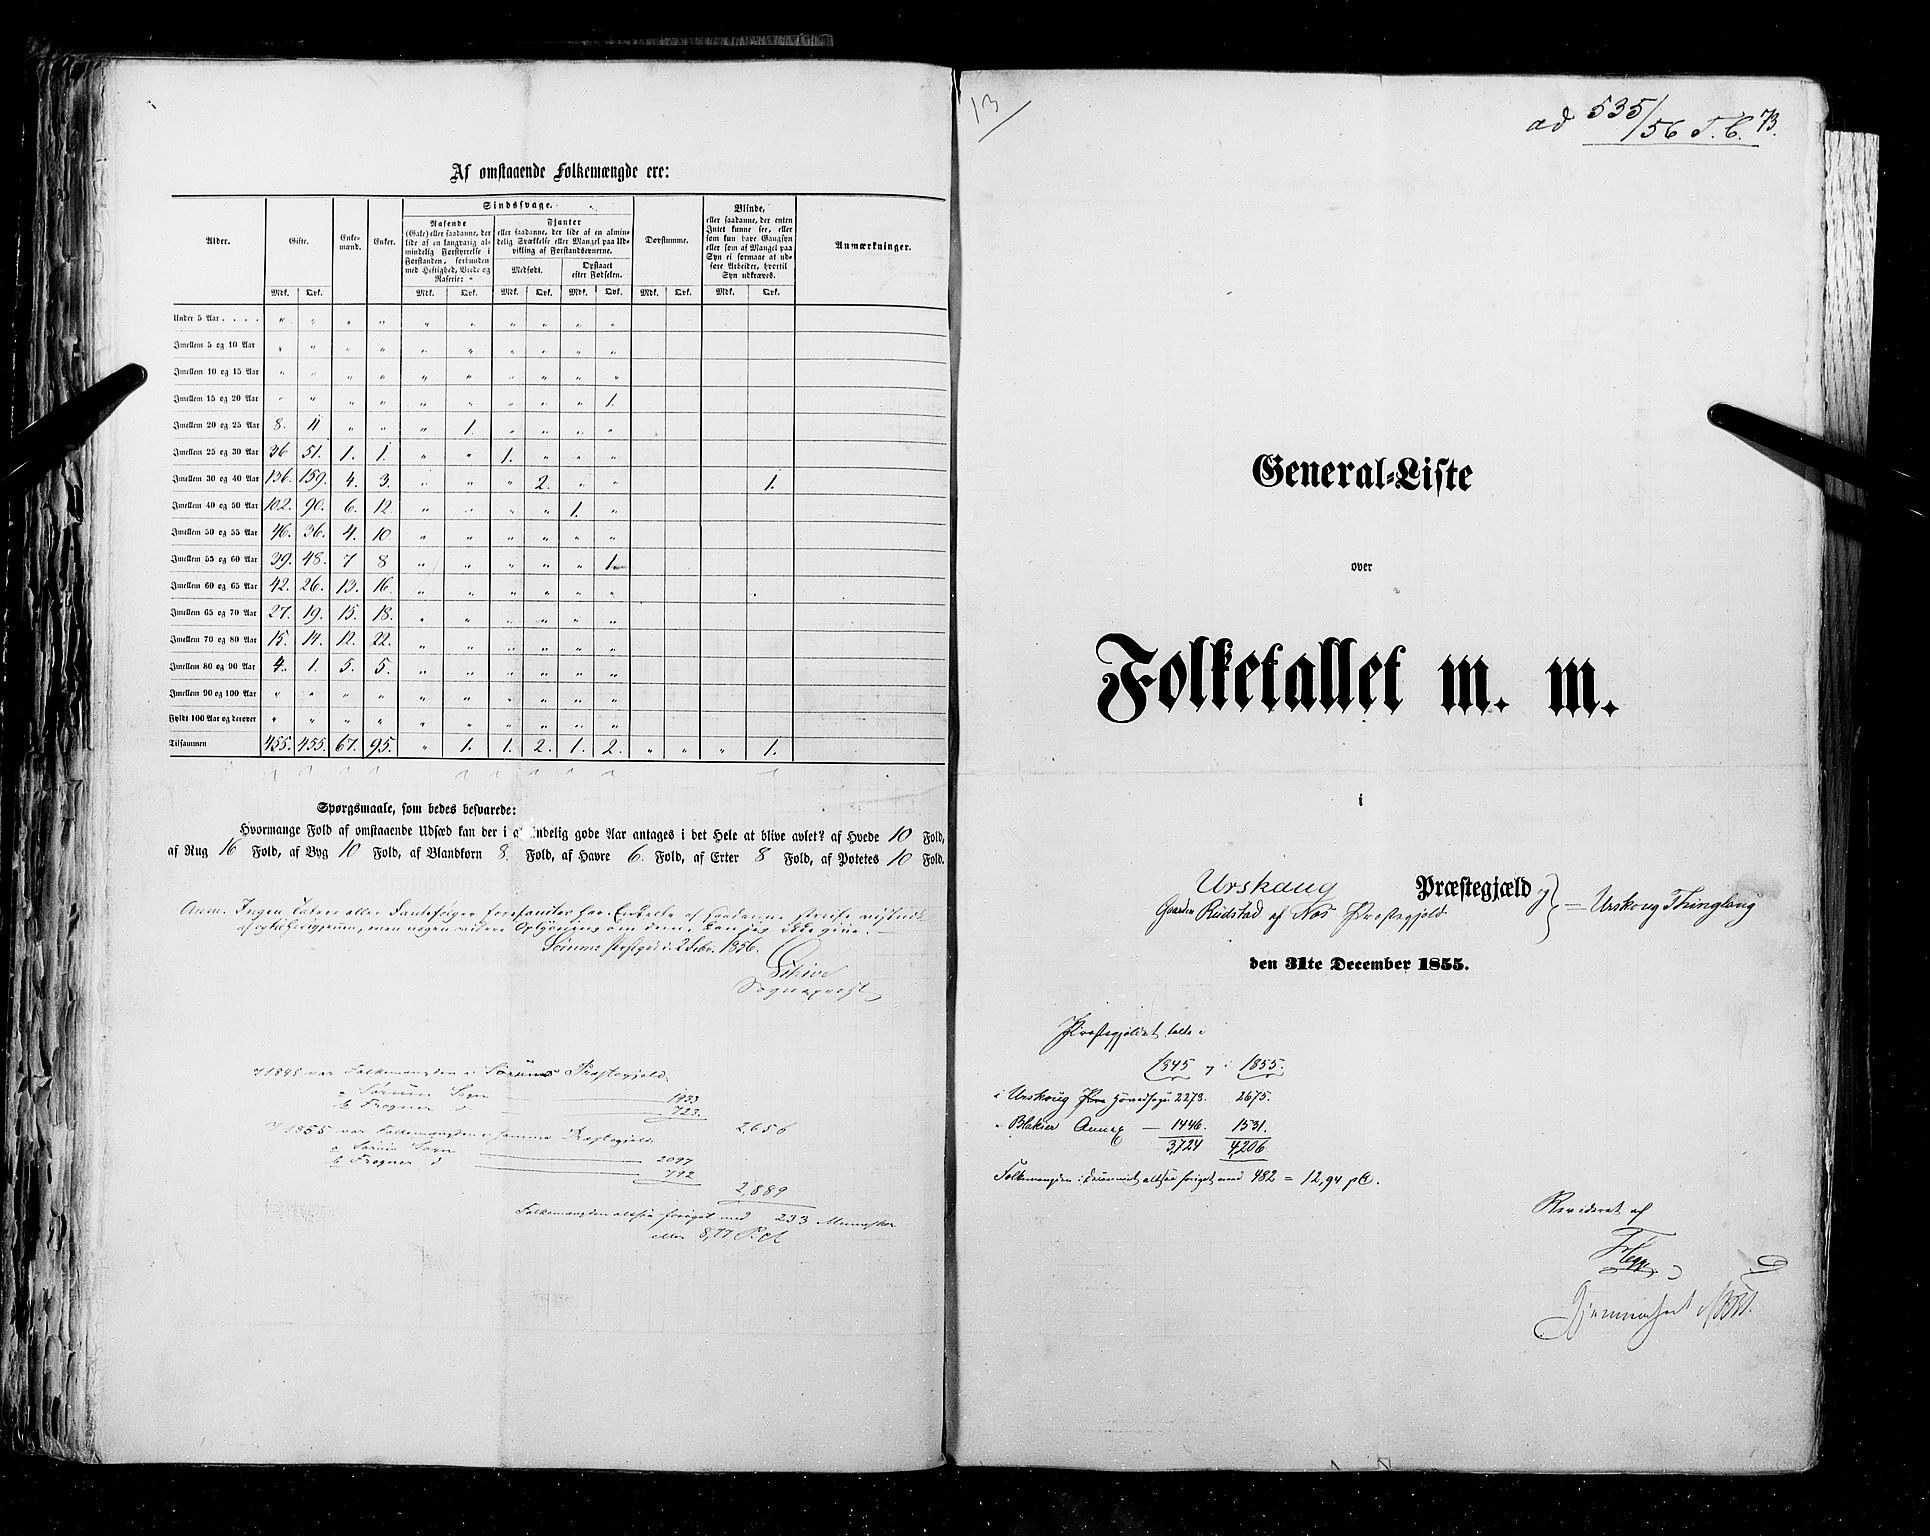 RA, Census 1855, vol. 1: Akershus amt, Smålenenes amt og Hedemarken amt, 1855, p. 73